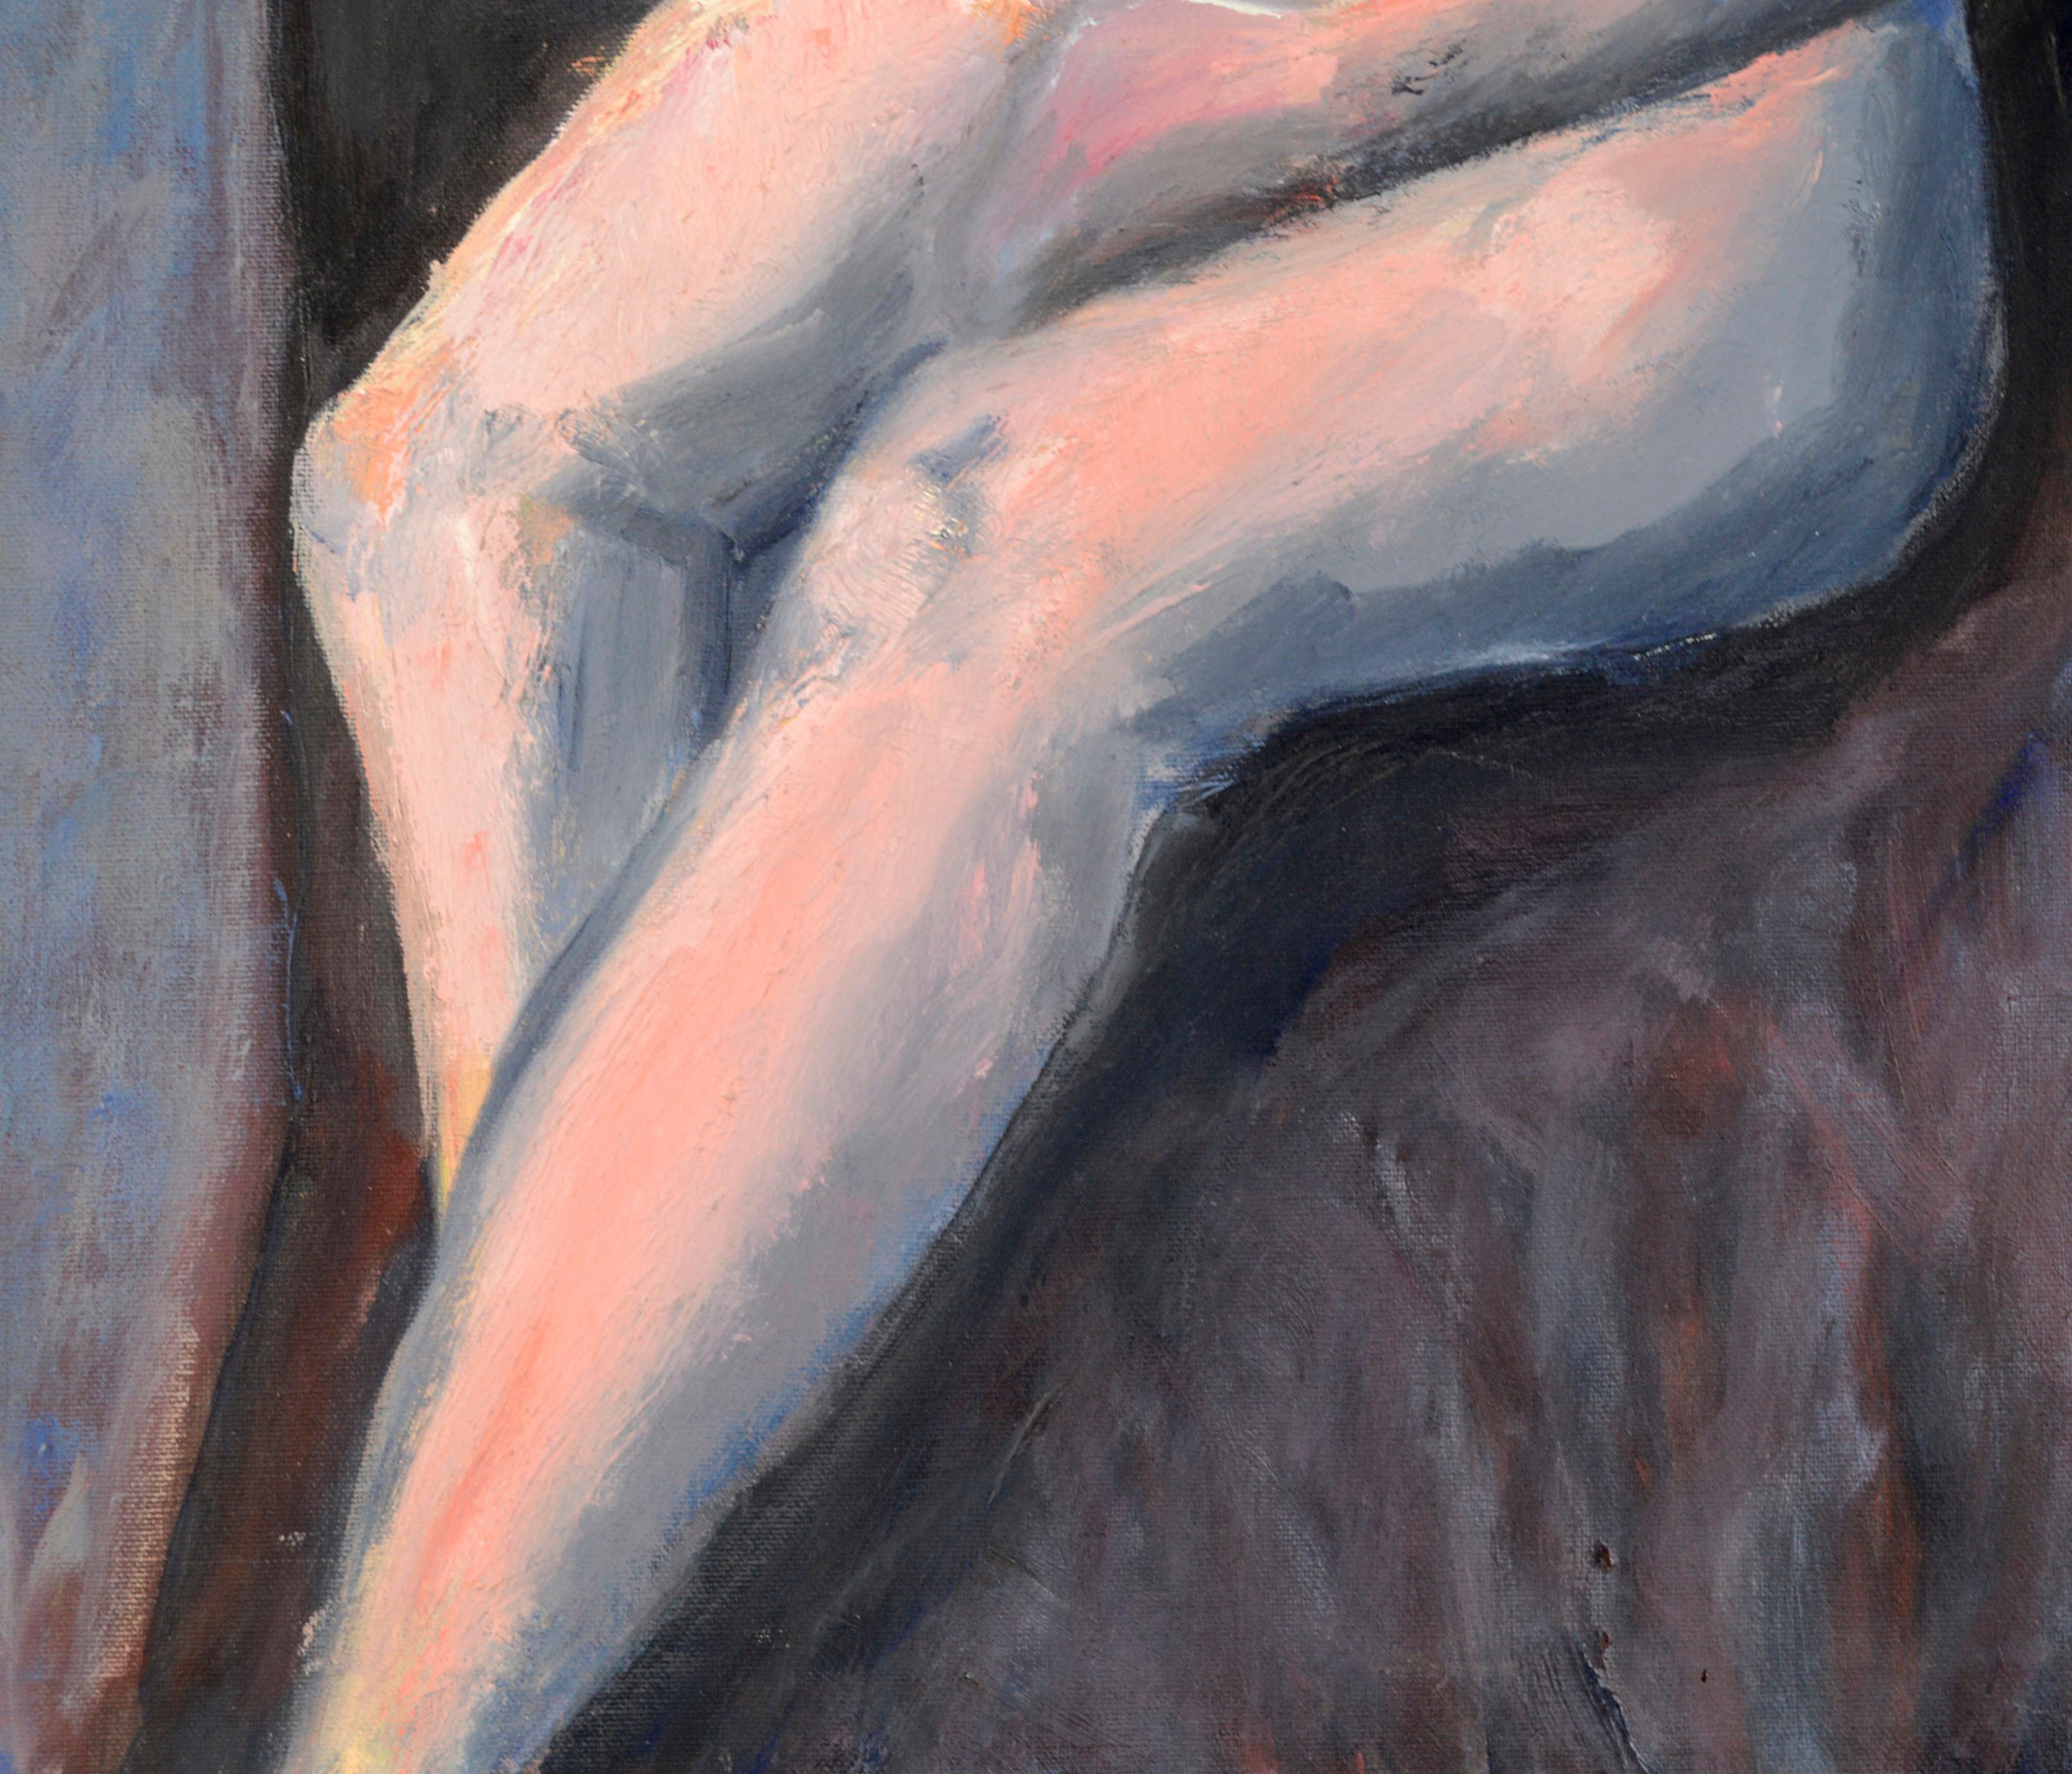 Buntes modernistisches Impasto-Figurengemälde einer sitzenden Frau von einem unbekannten Künstler. Diese zeitgenössische figurative Arbeit verwendet ausdrucksstarke Texturen und Farben mit einer Palette von Rosatönen, Orangen und Blautönen. 

Nicht